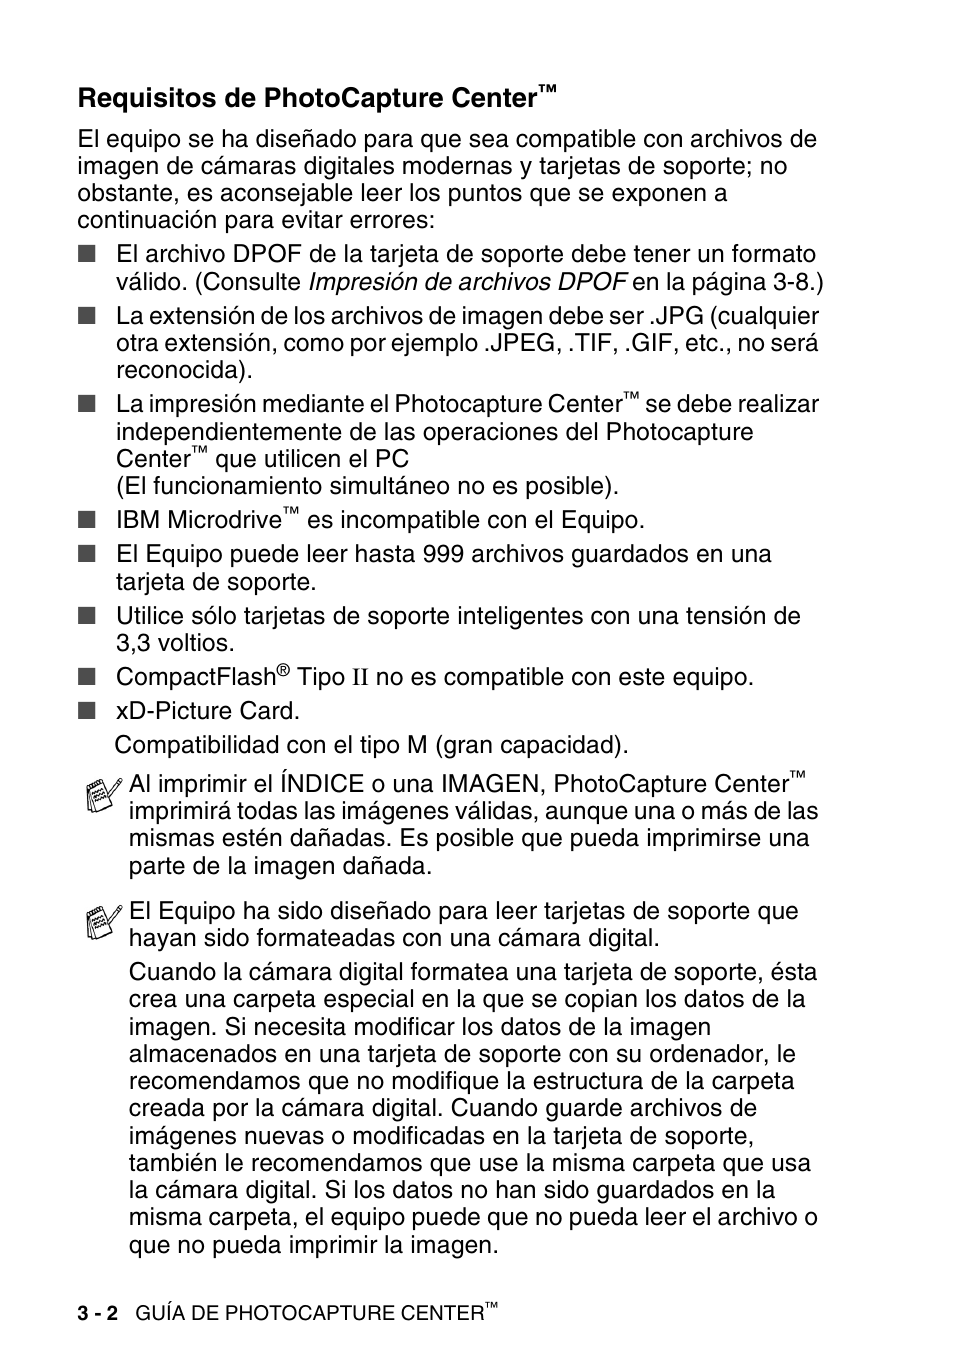 Requisitos de photocapture center | Brother DCP-120C Manual del usuario | Página 48 / 112